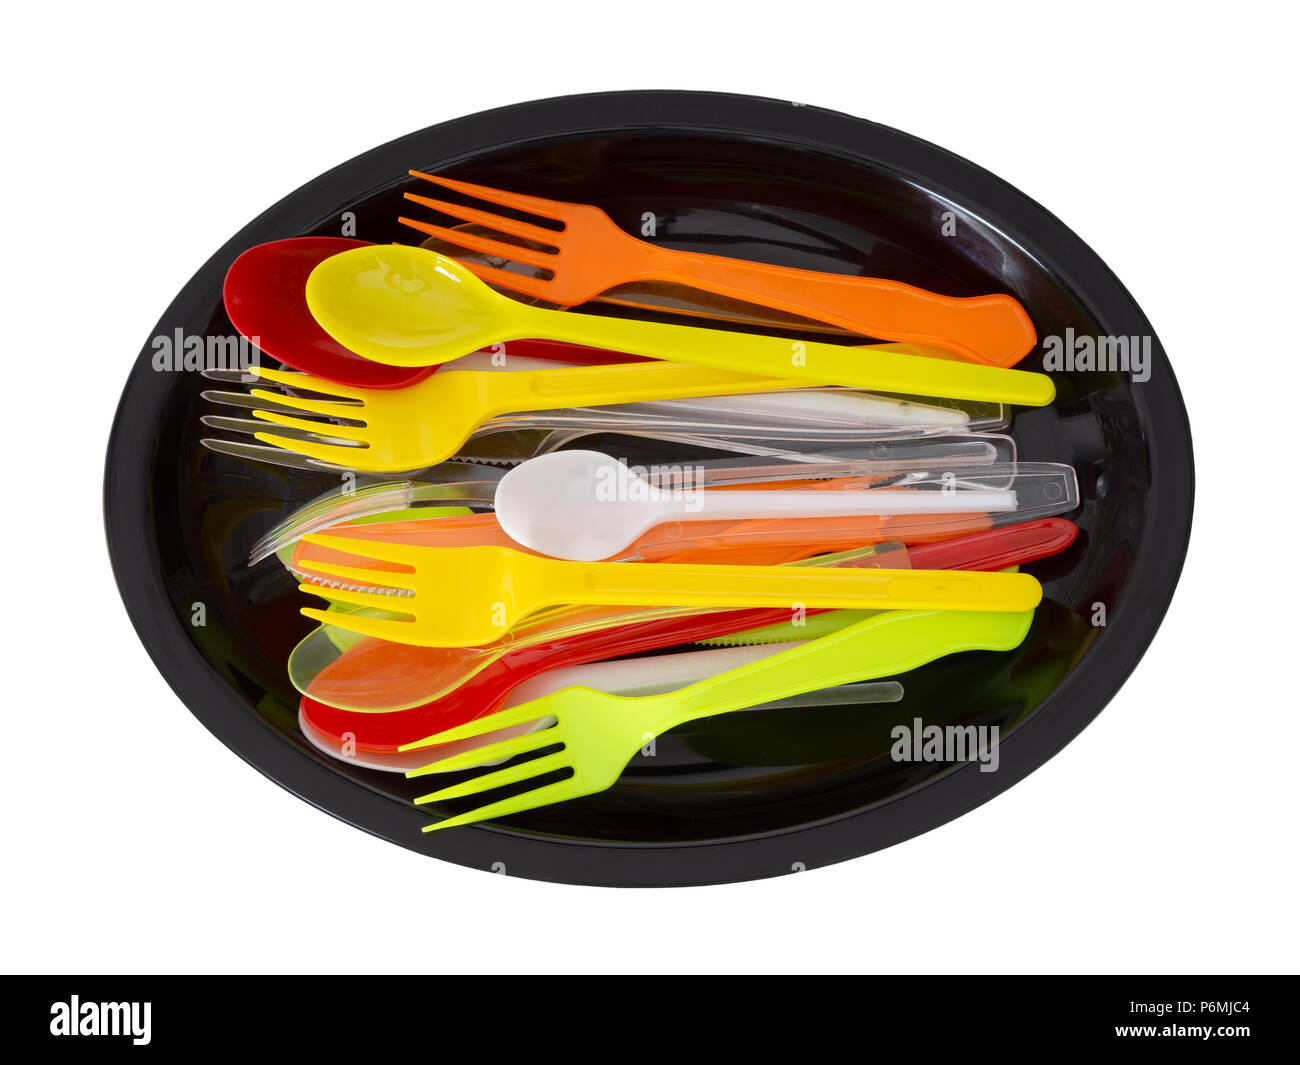 Cuchillos de plástico, tenedores y cucharas sobre placa negra aislado en blanco. Foto de stock